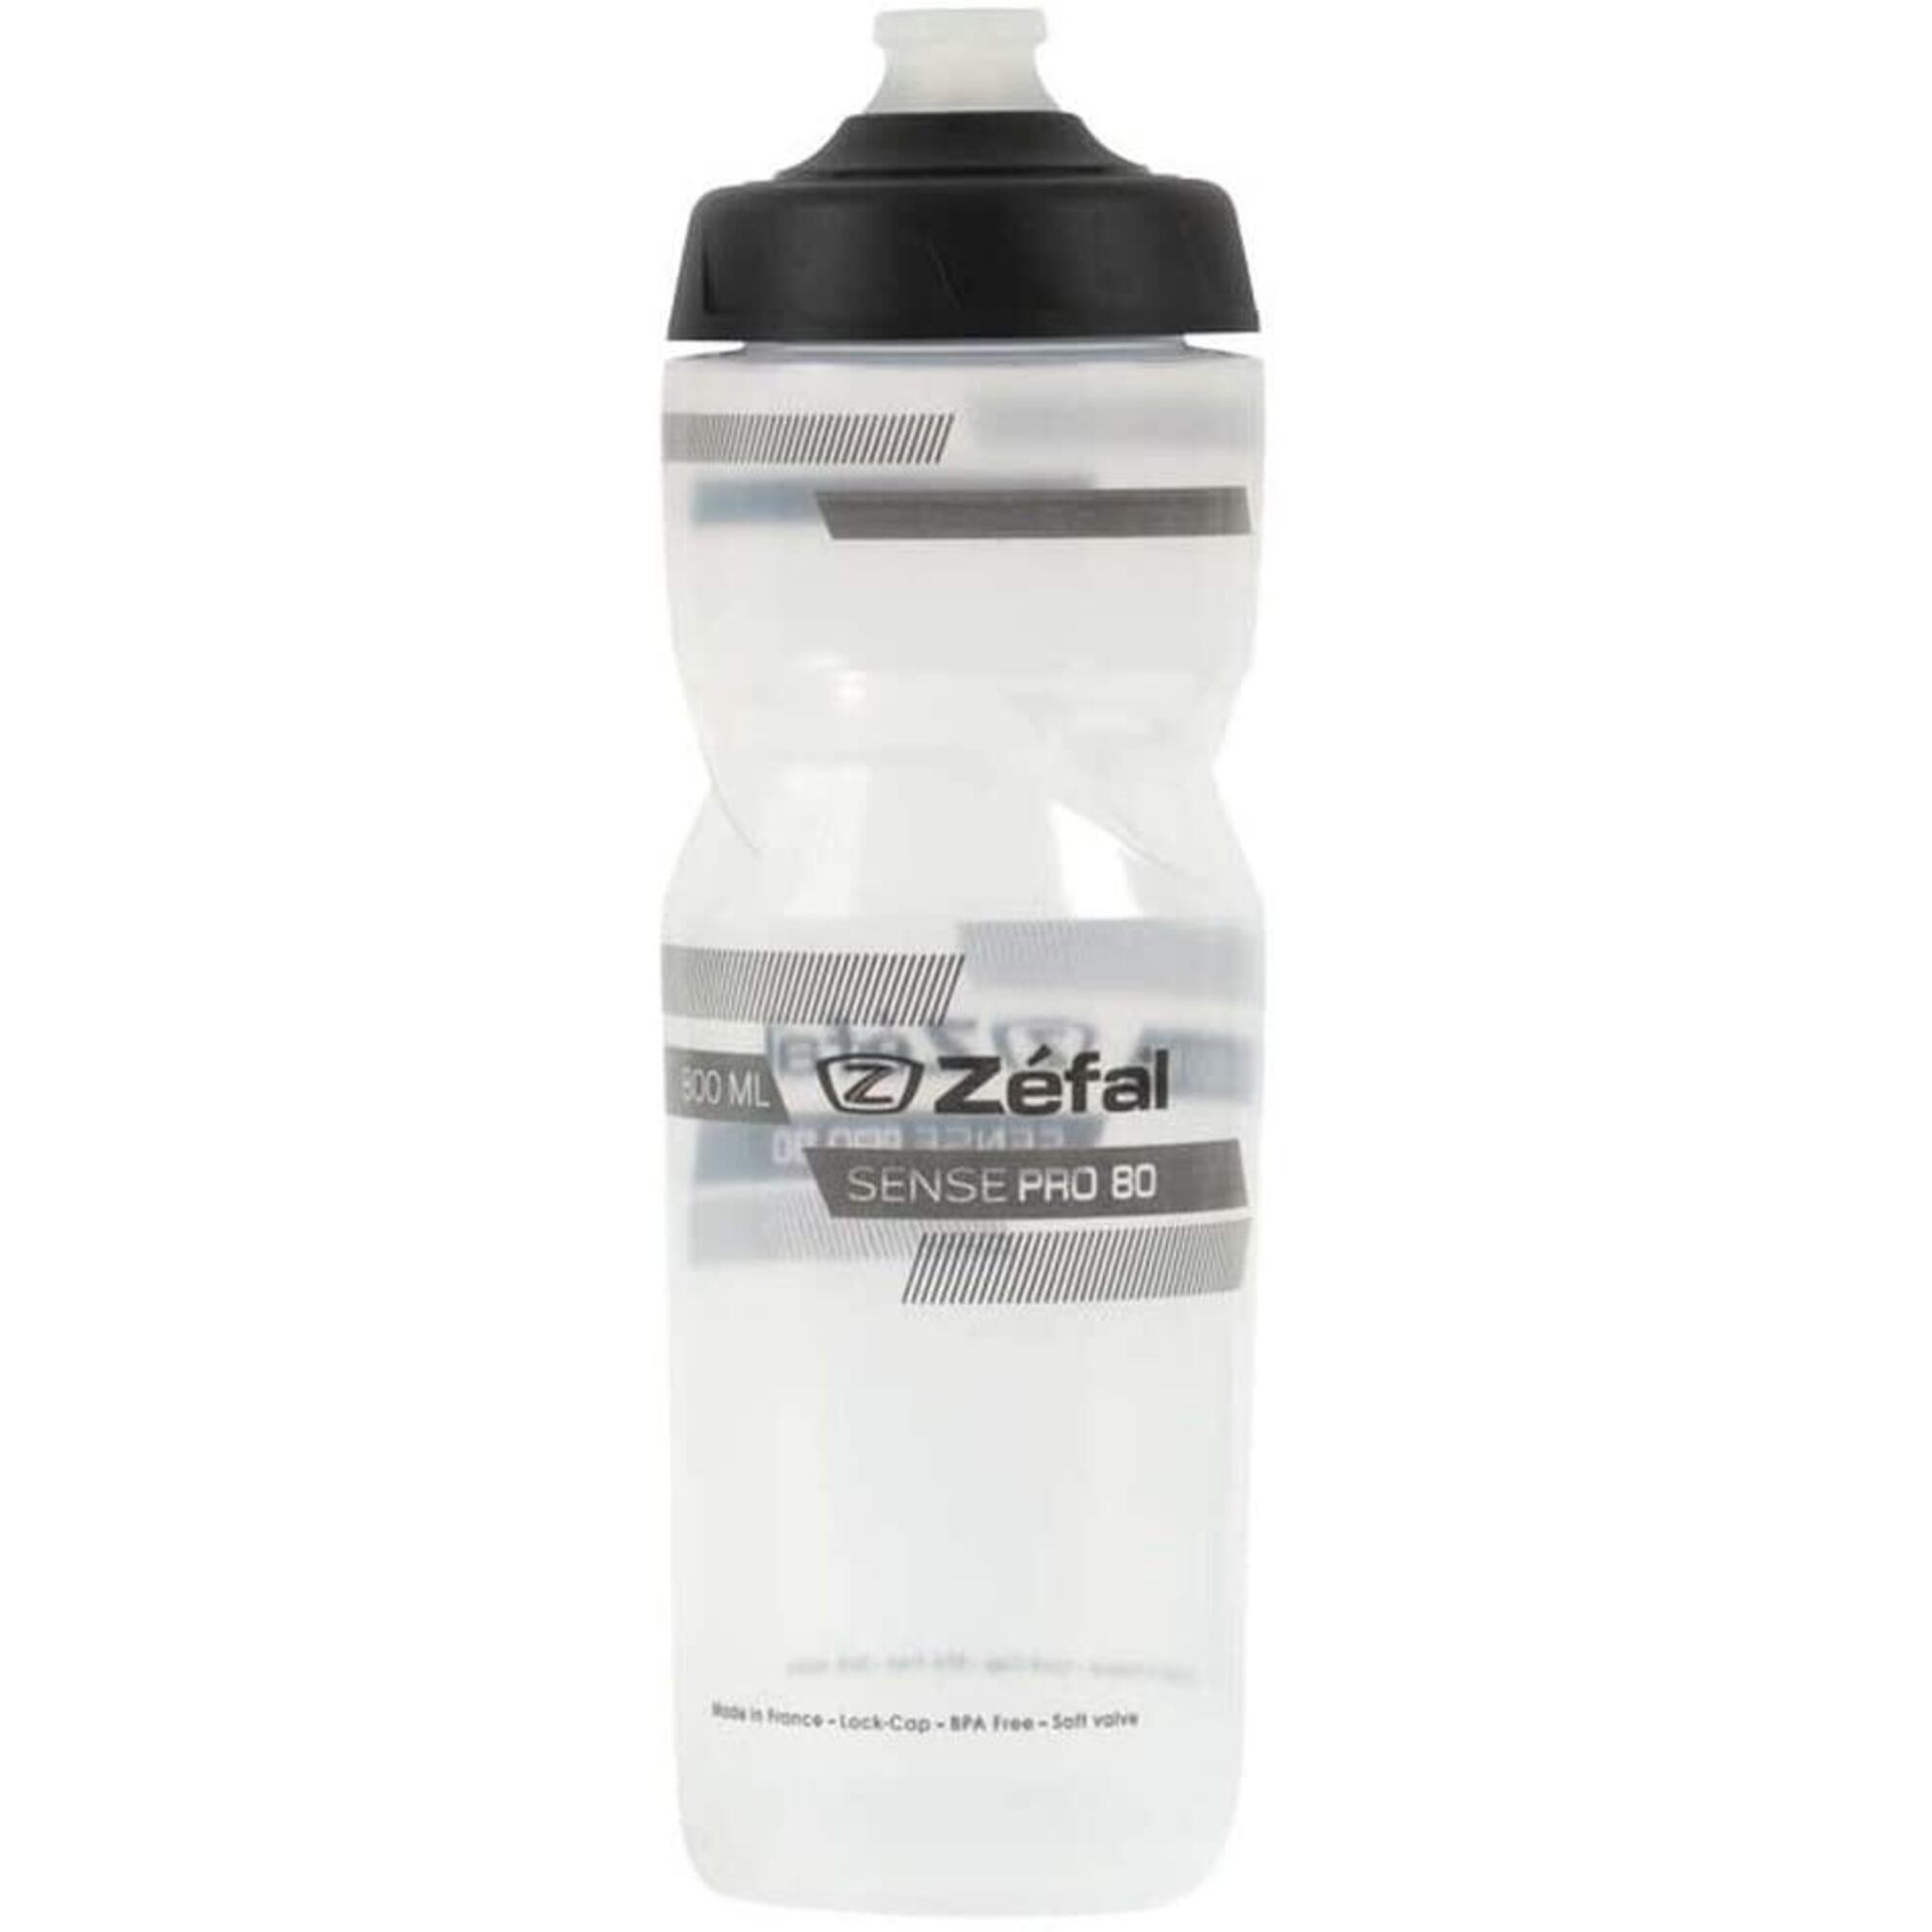 ZEFAL Zefal Sense Pro 80 Water Bottle - Translucent